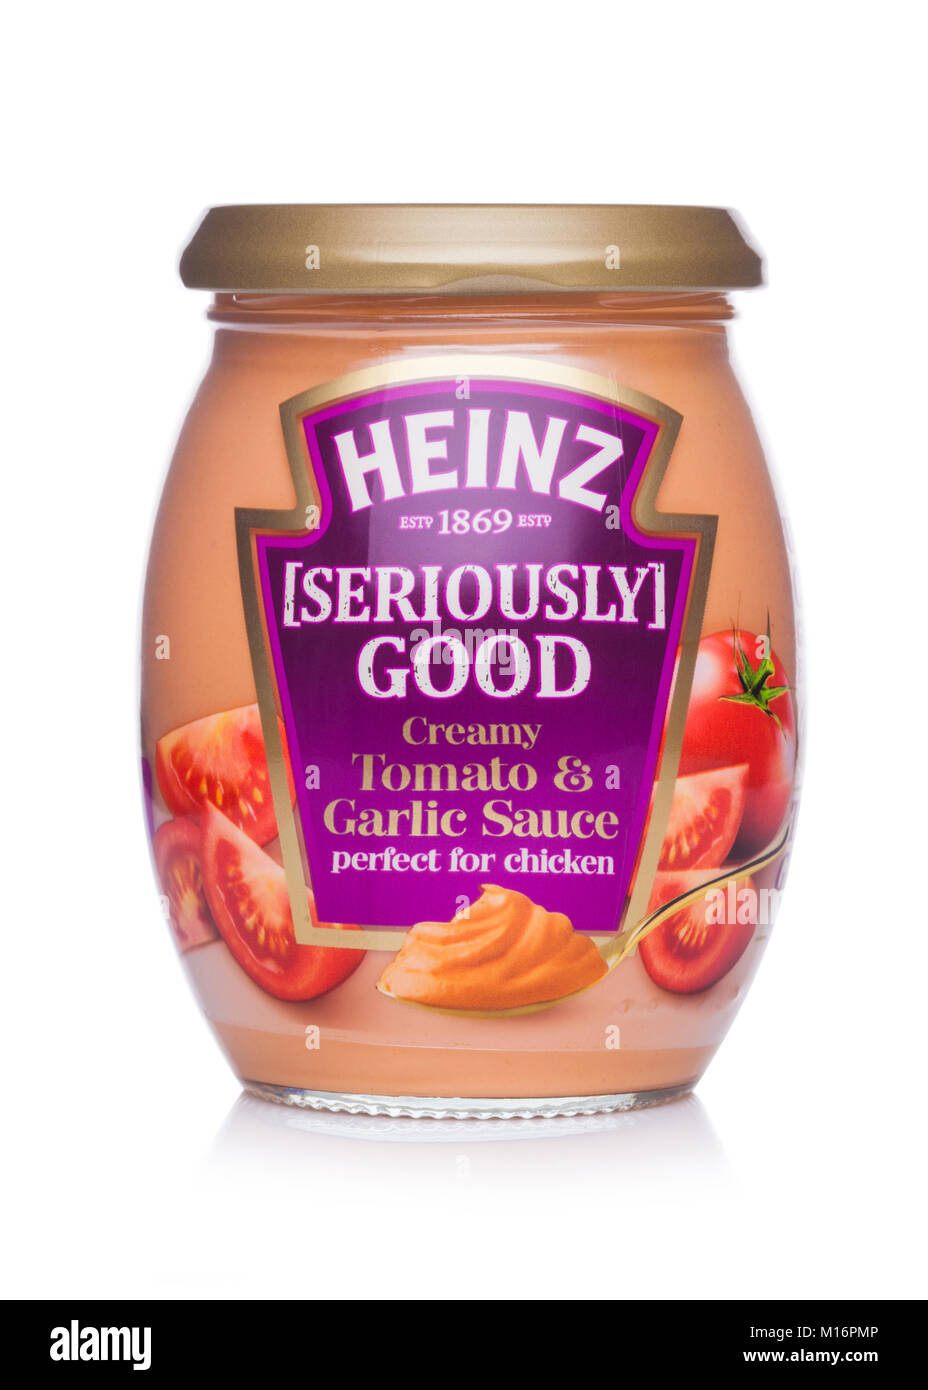 Londres, Royaume-Uni - 24 janvier 2018 : un bocal de verre de Heinz au sérieux bonne crème de tomates et la sauce à l'ail sur fond blanc. Banque D'Images